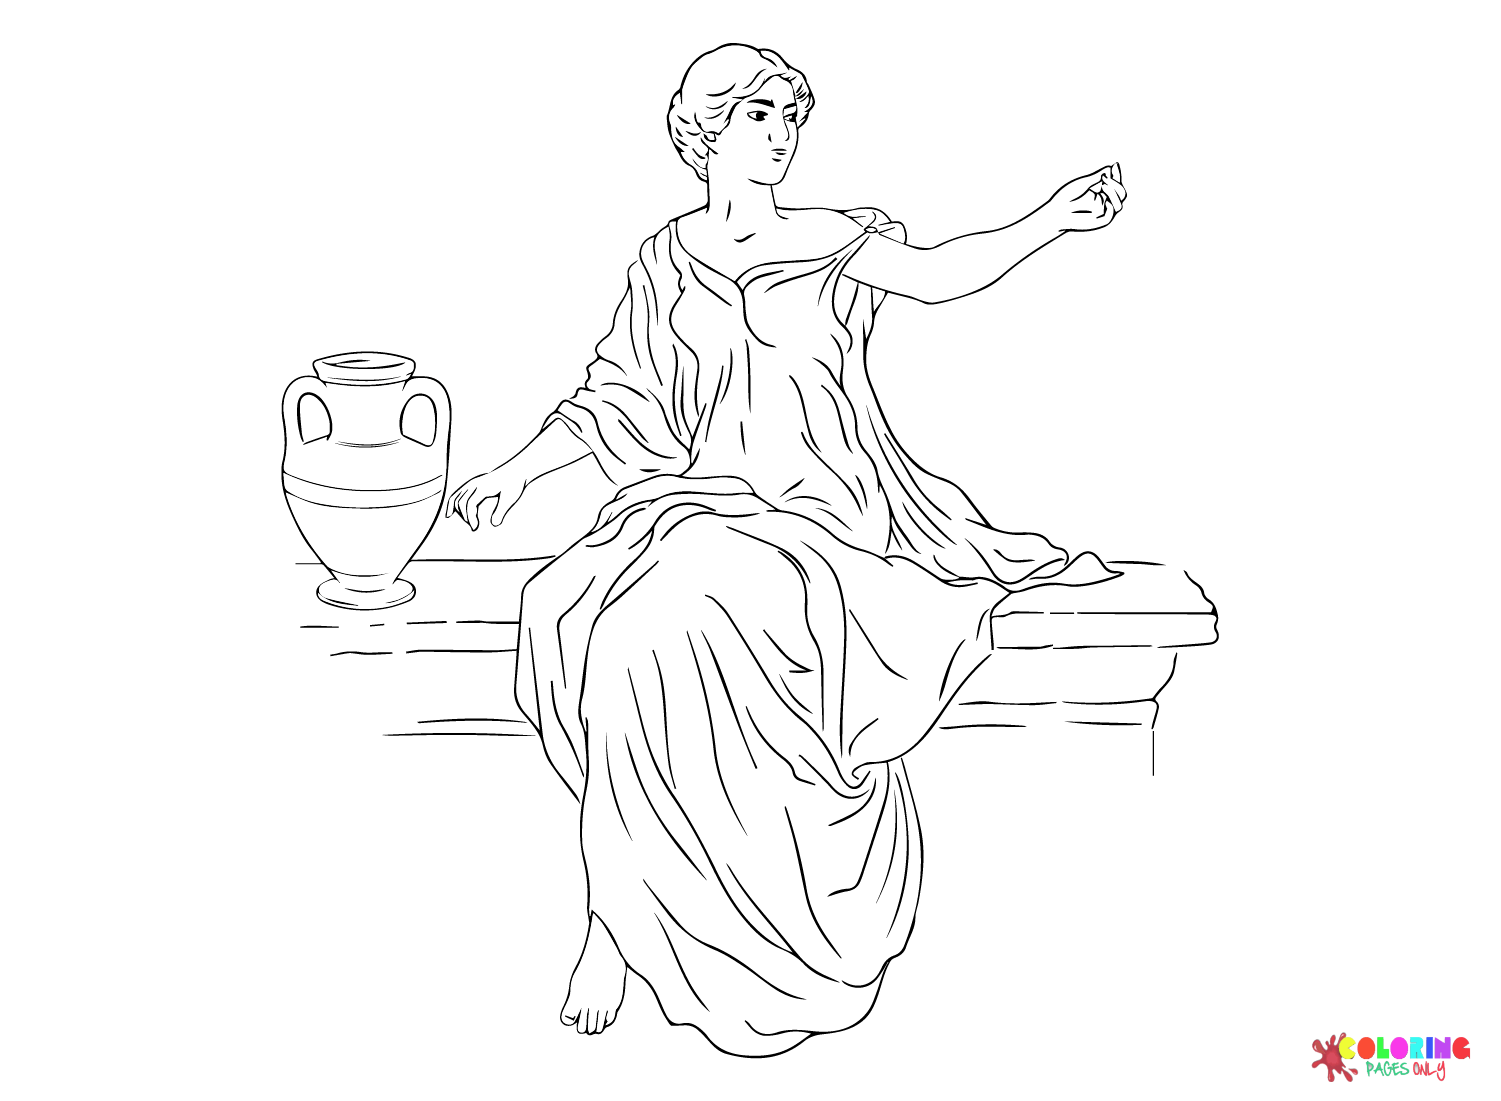 Vector Mulher Grega Antiga Senta-se Em Uma Cadeira Perto De Uma Jarra De Vinho Da Roma Antiga E Do Império Romano